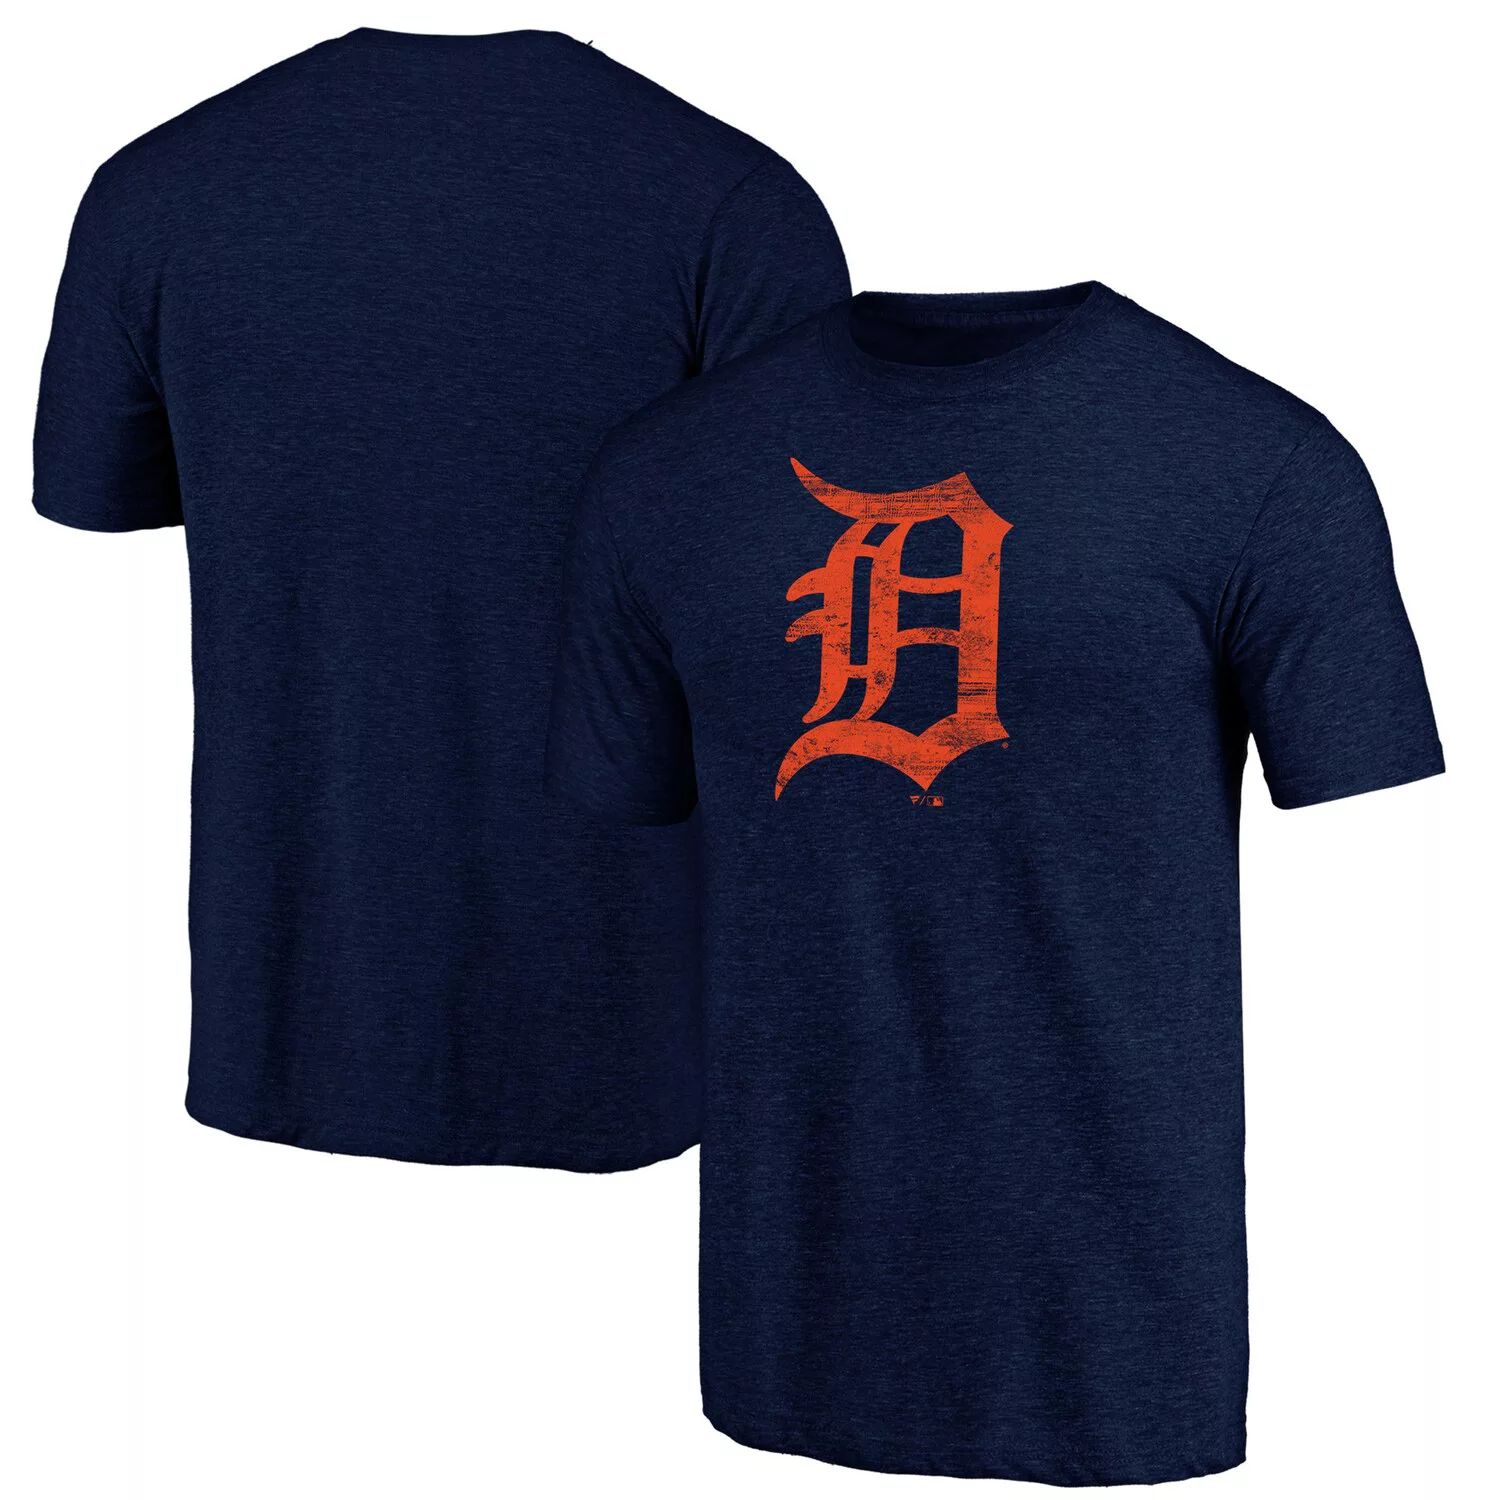 Мужская футболка Fanatics с фирменным логотипом Detroit Tigers Weathered Tri-Blend с официальным логотипом